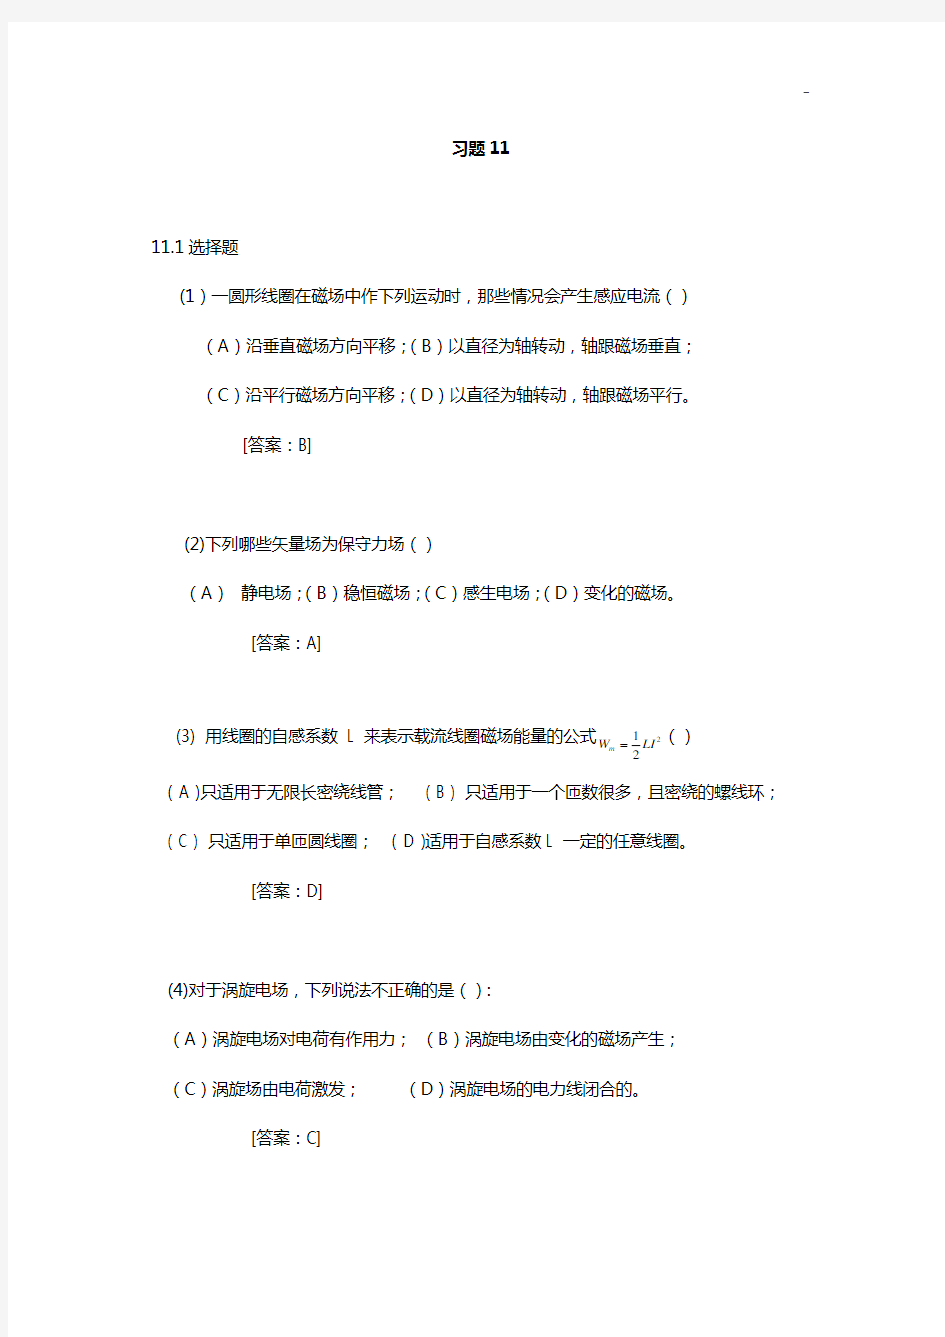 大学物理学第三版修订版下册第11章答案解析(赵近芳)